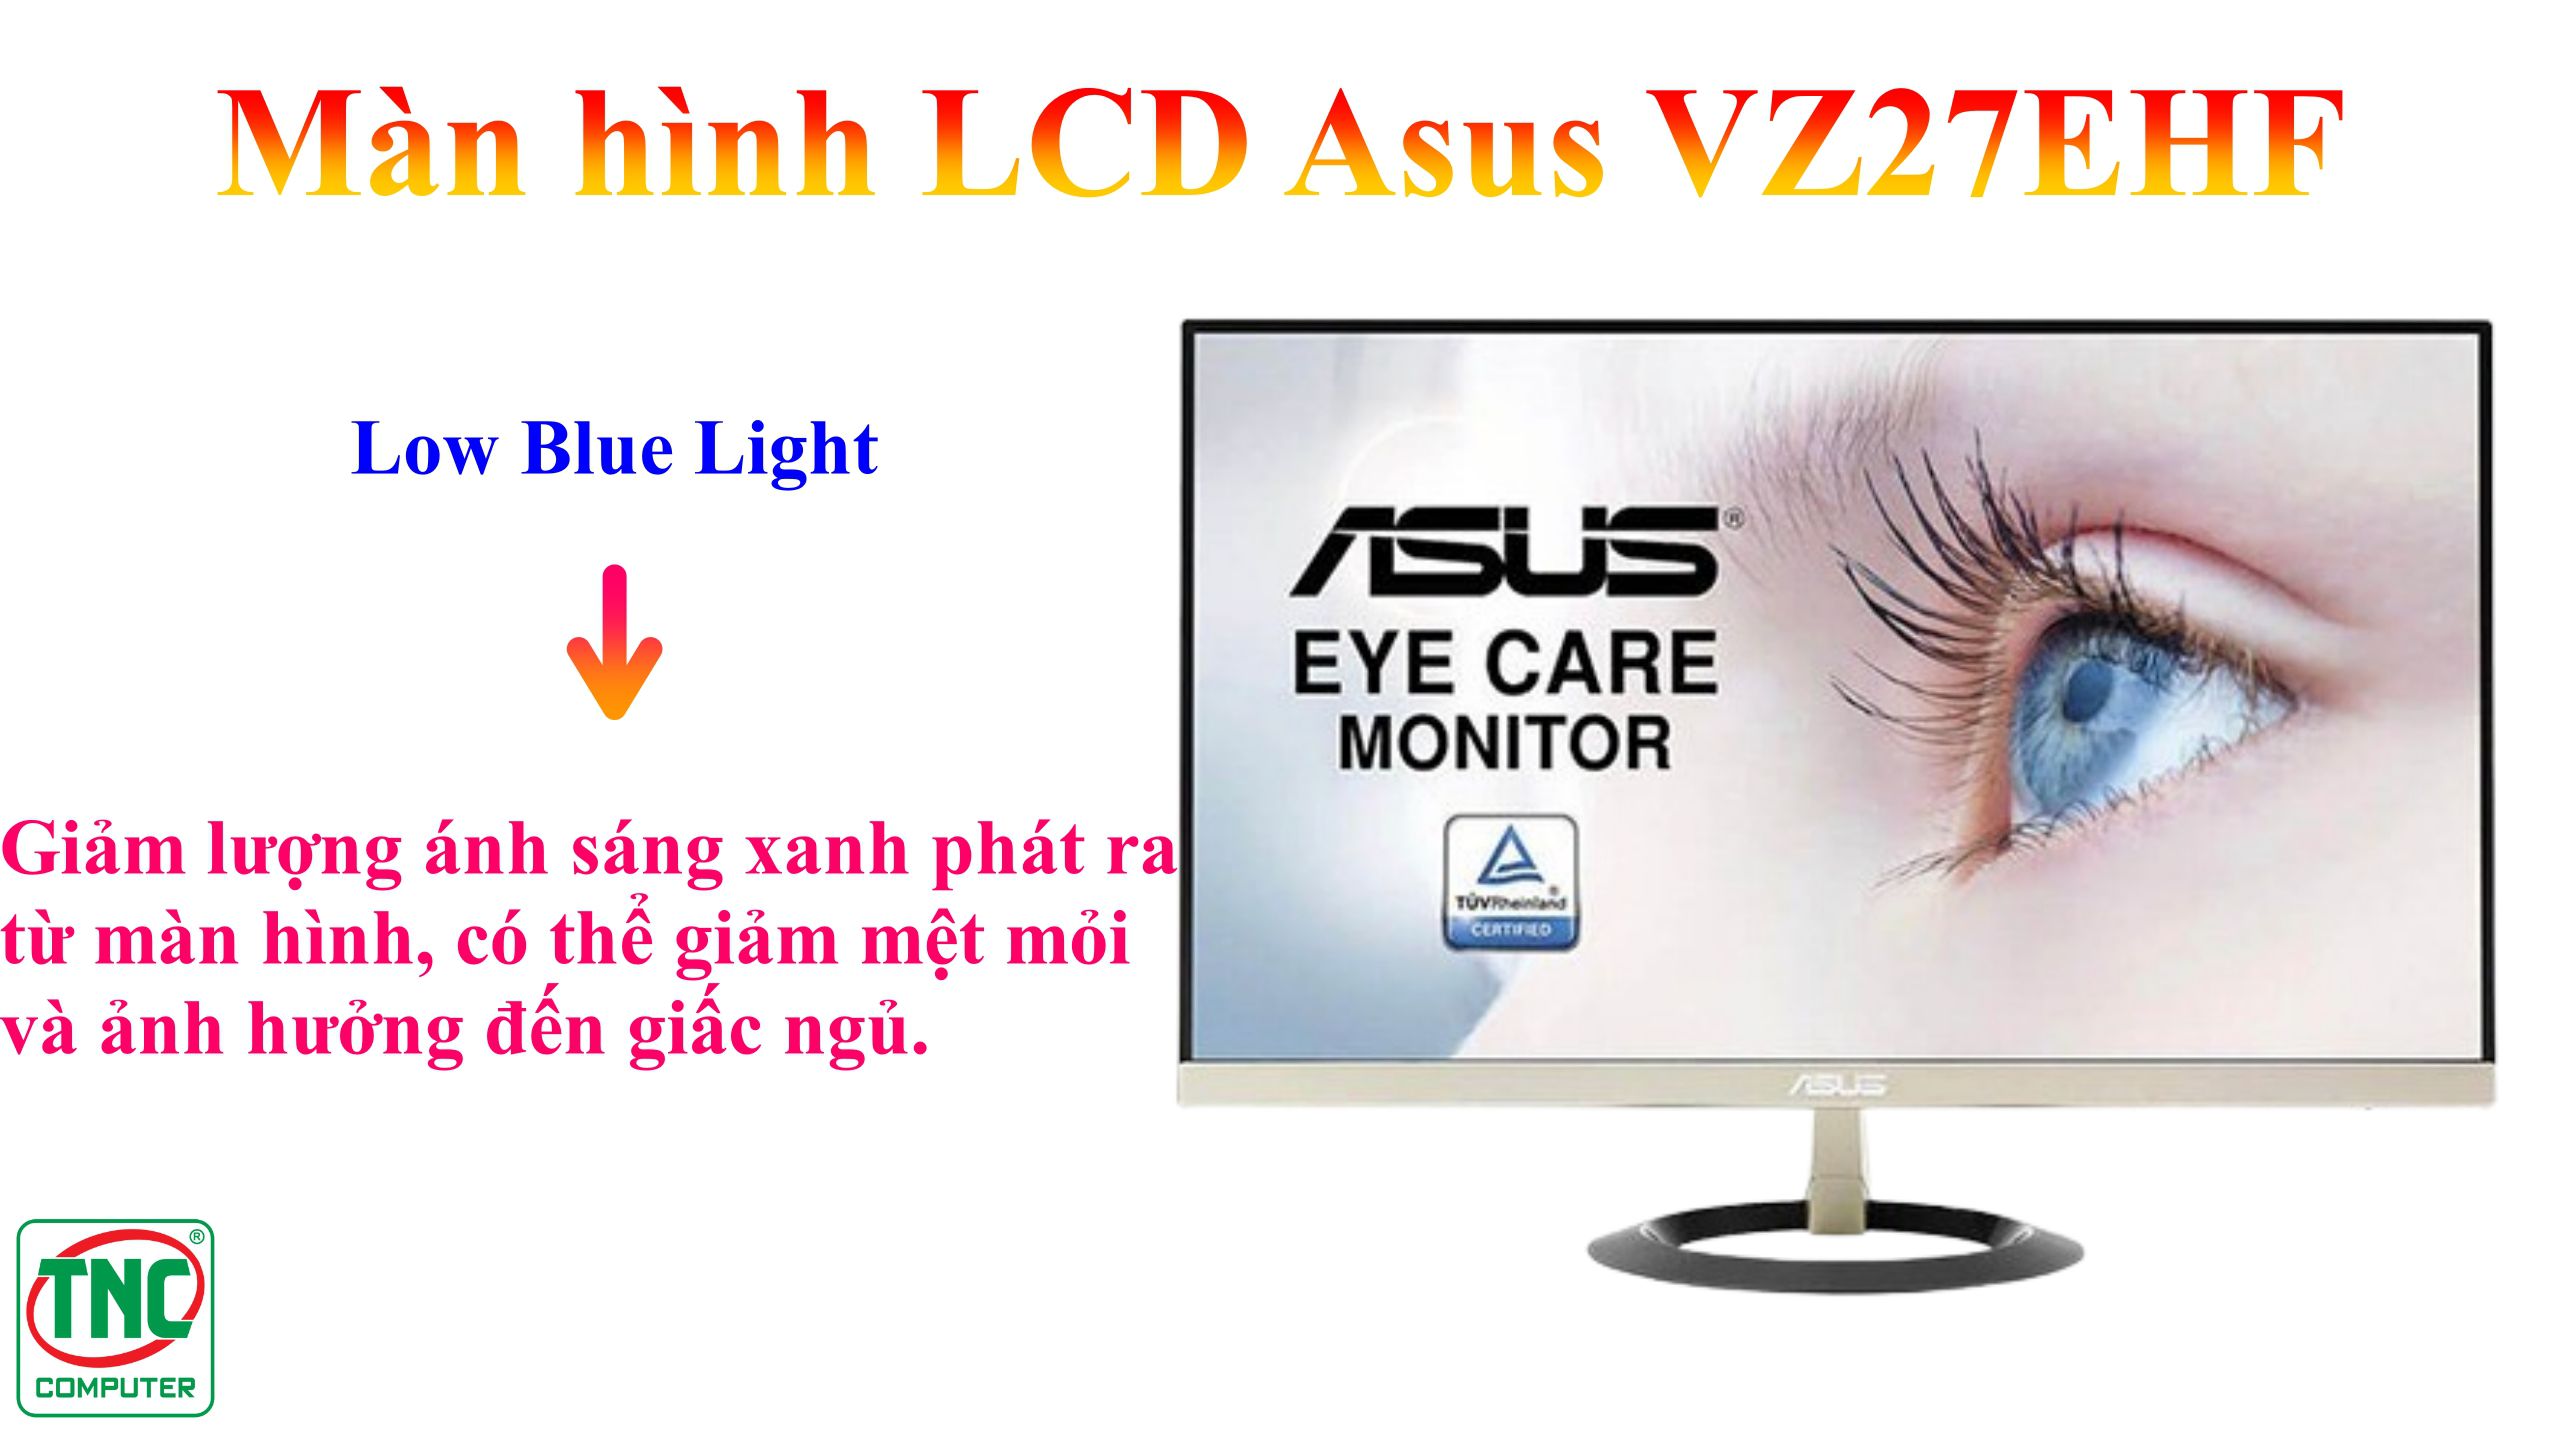 Màn hình LCD Asus VZ27EHF